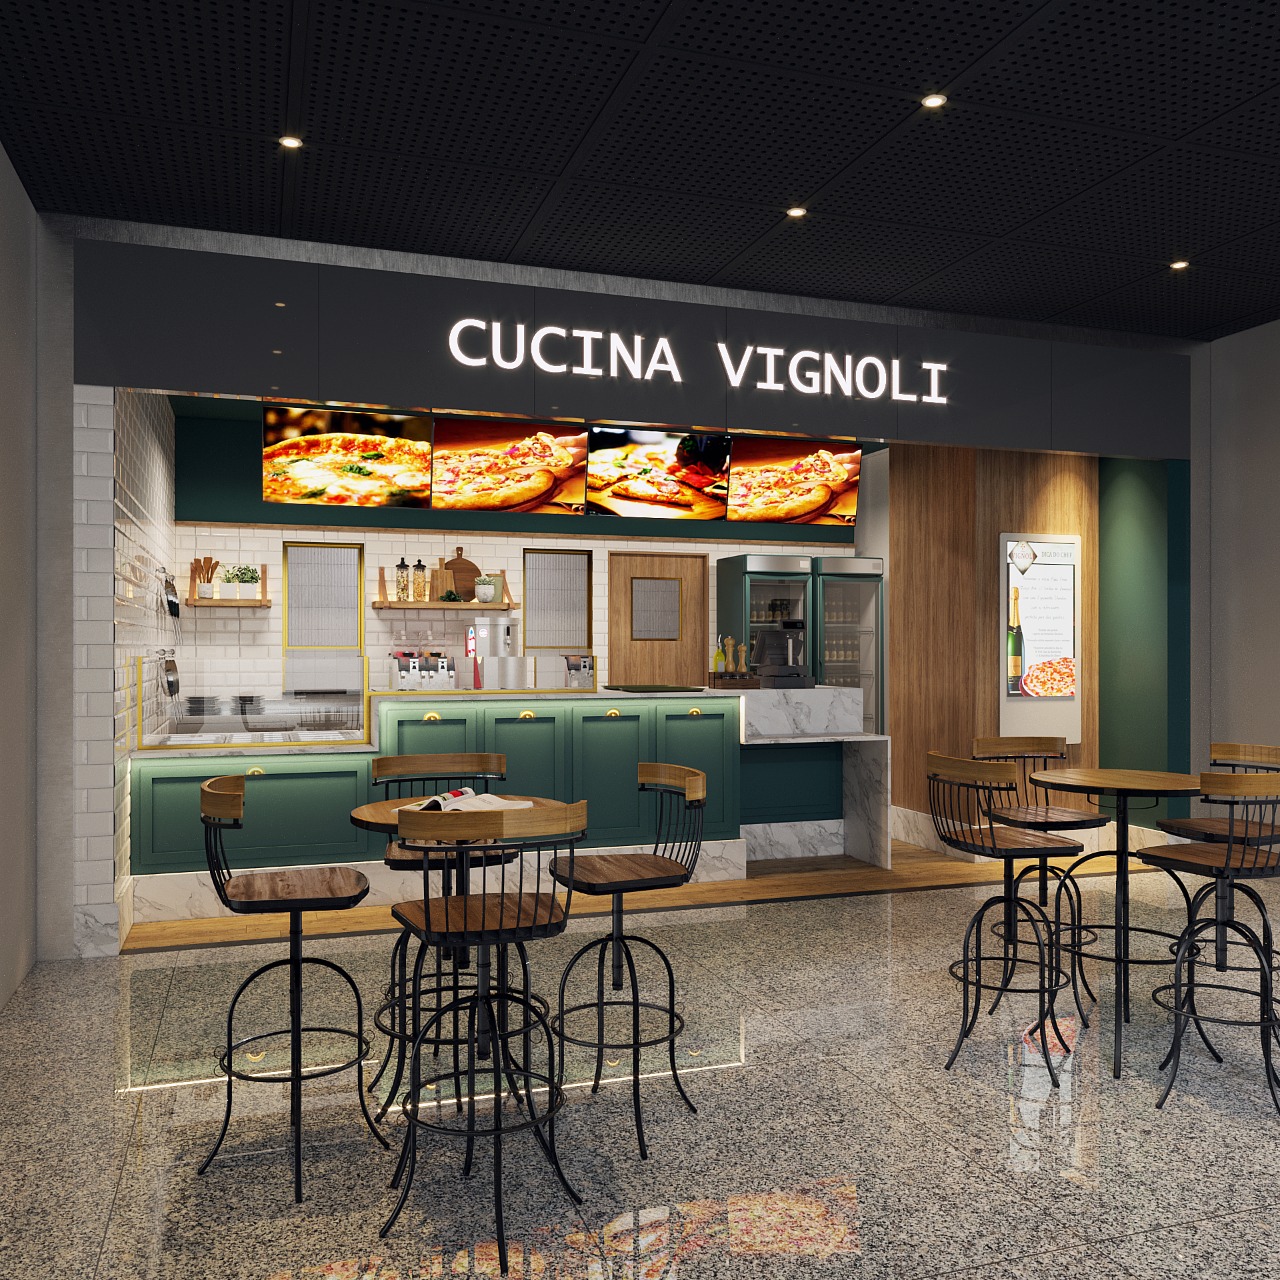 Vignoli inaugura loja no Aeroporto de Fortaleza e aposta em rebranding